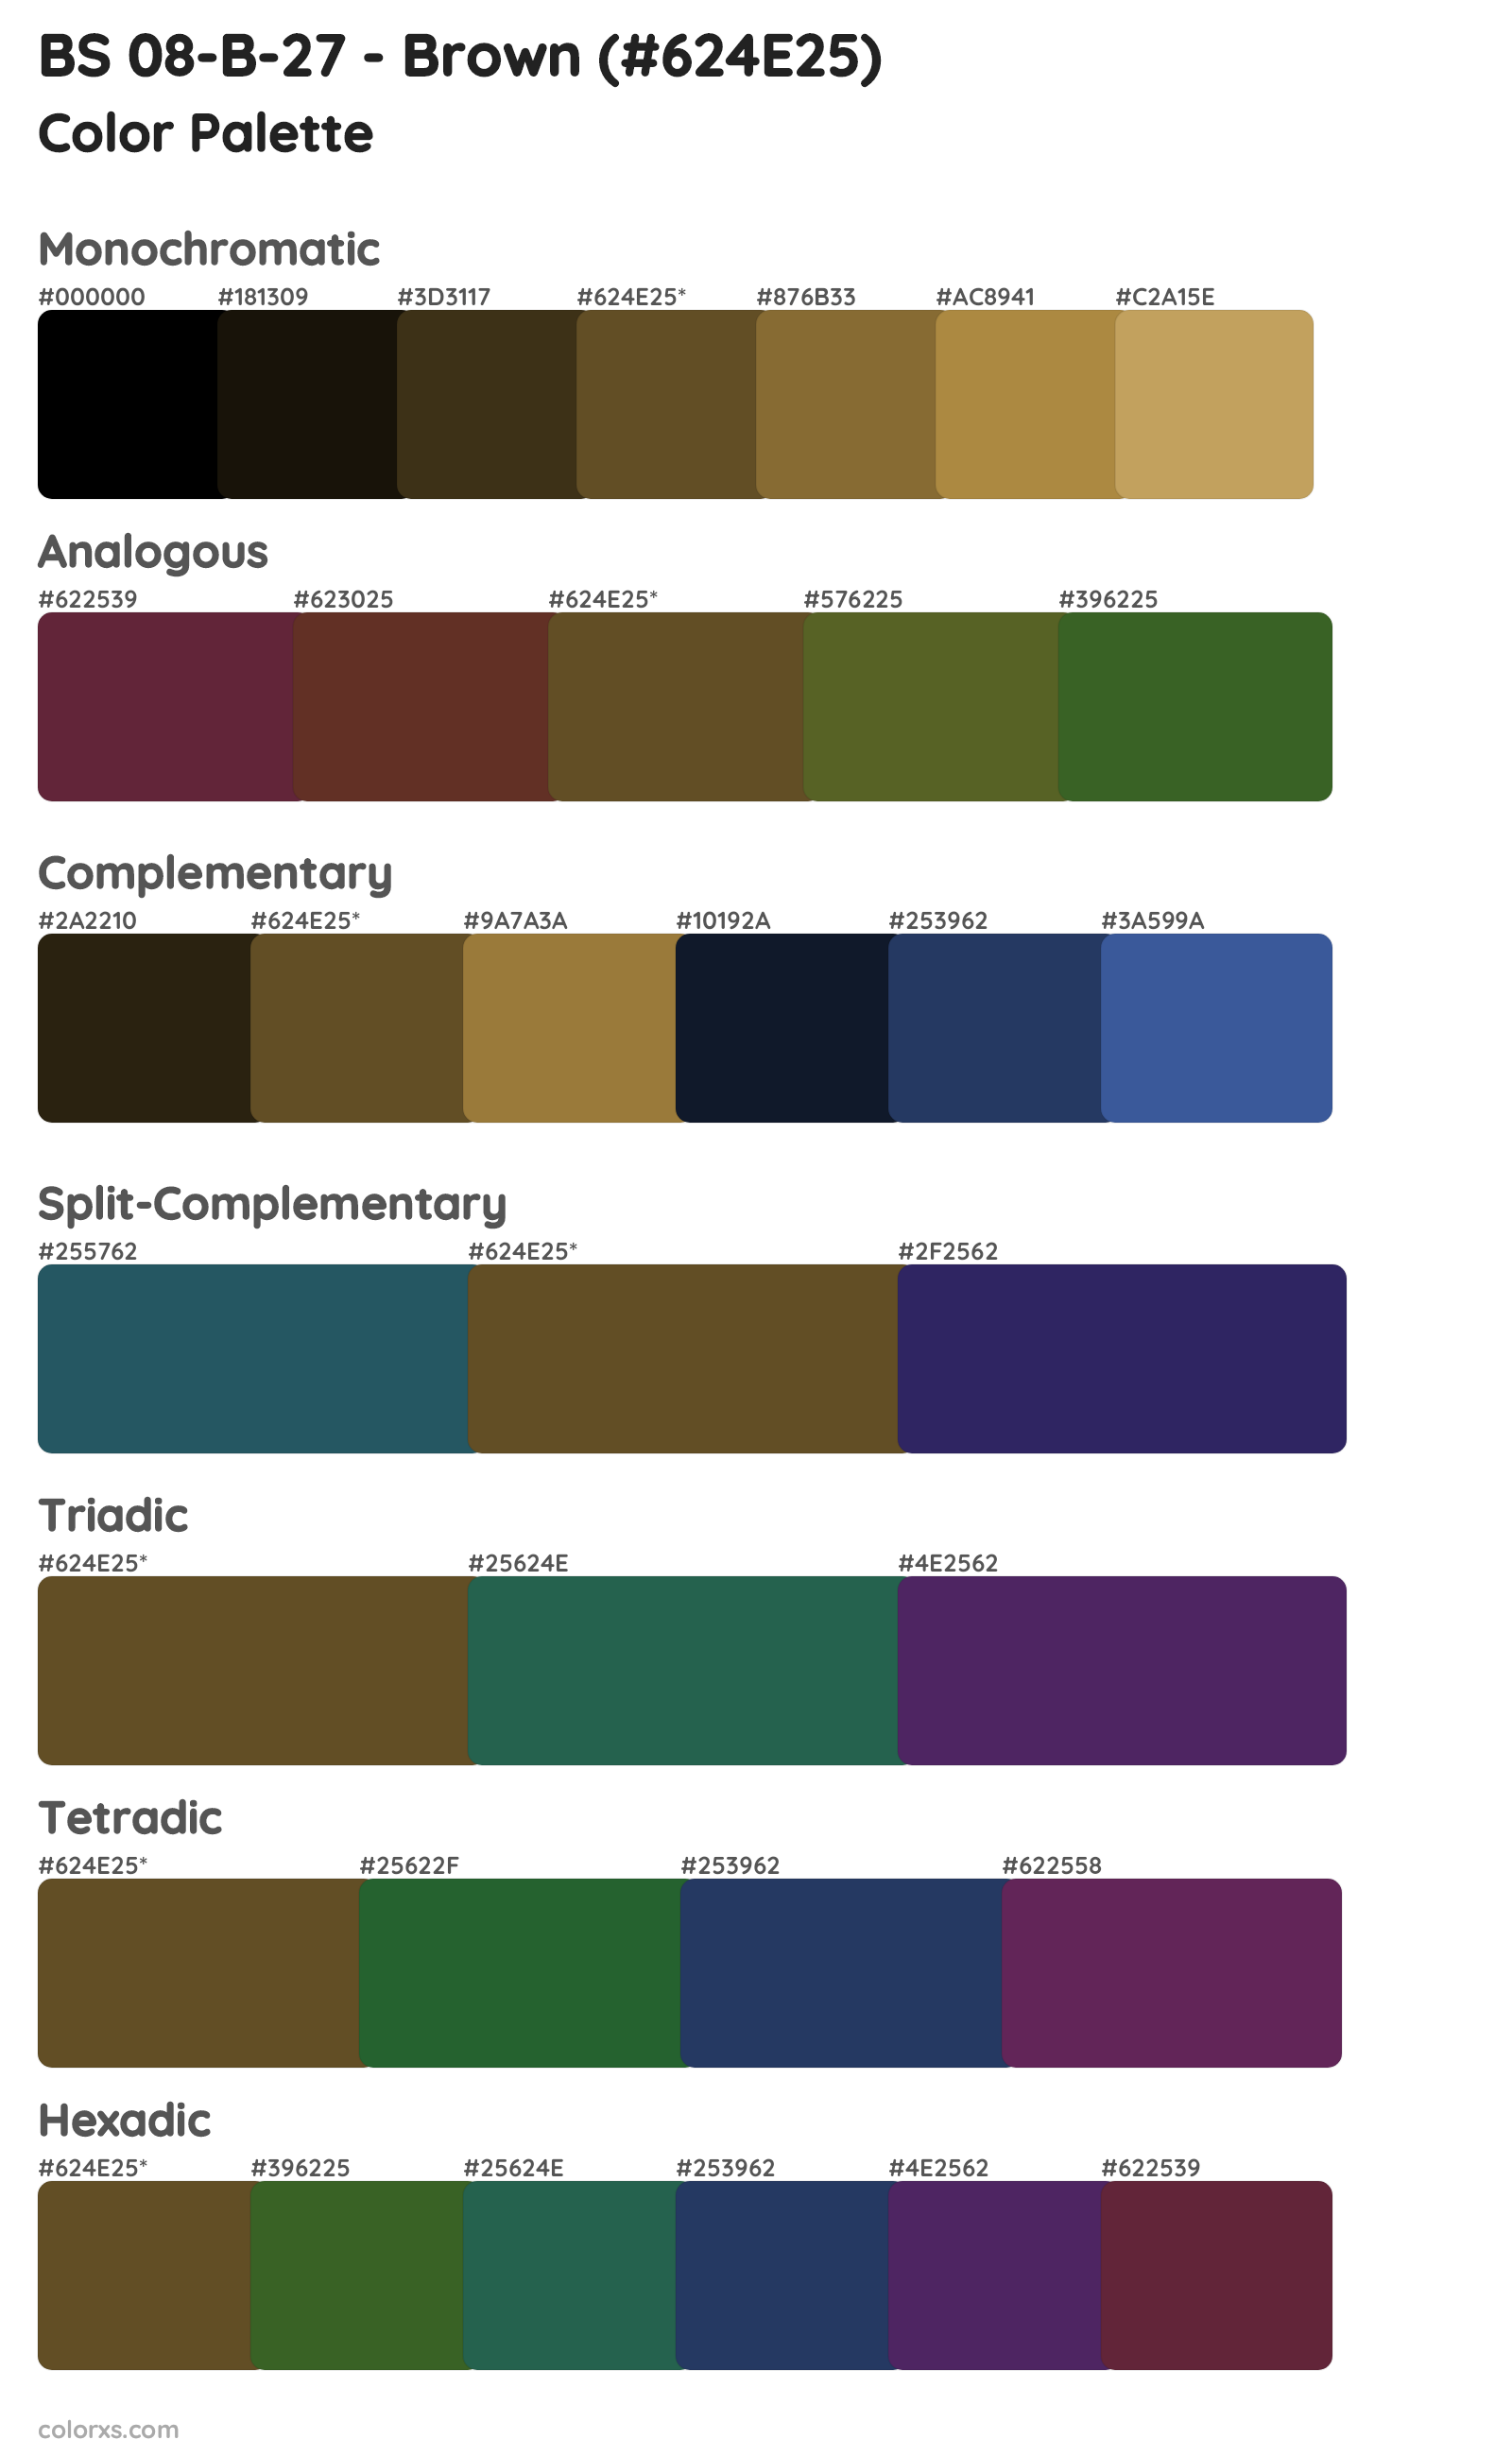 BS 08-B-27 - Brown Color Scheme Palettes